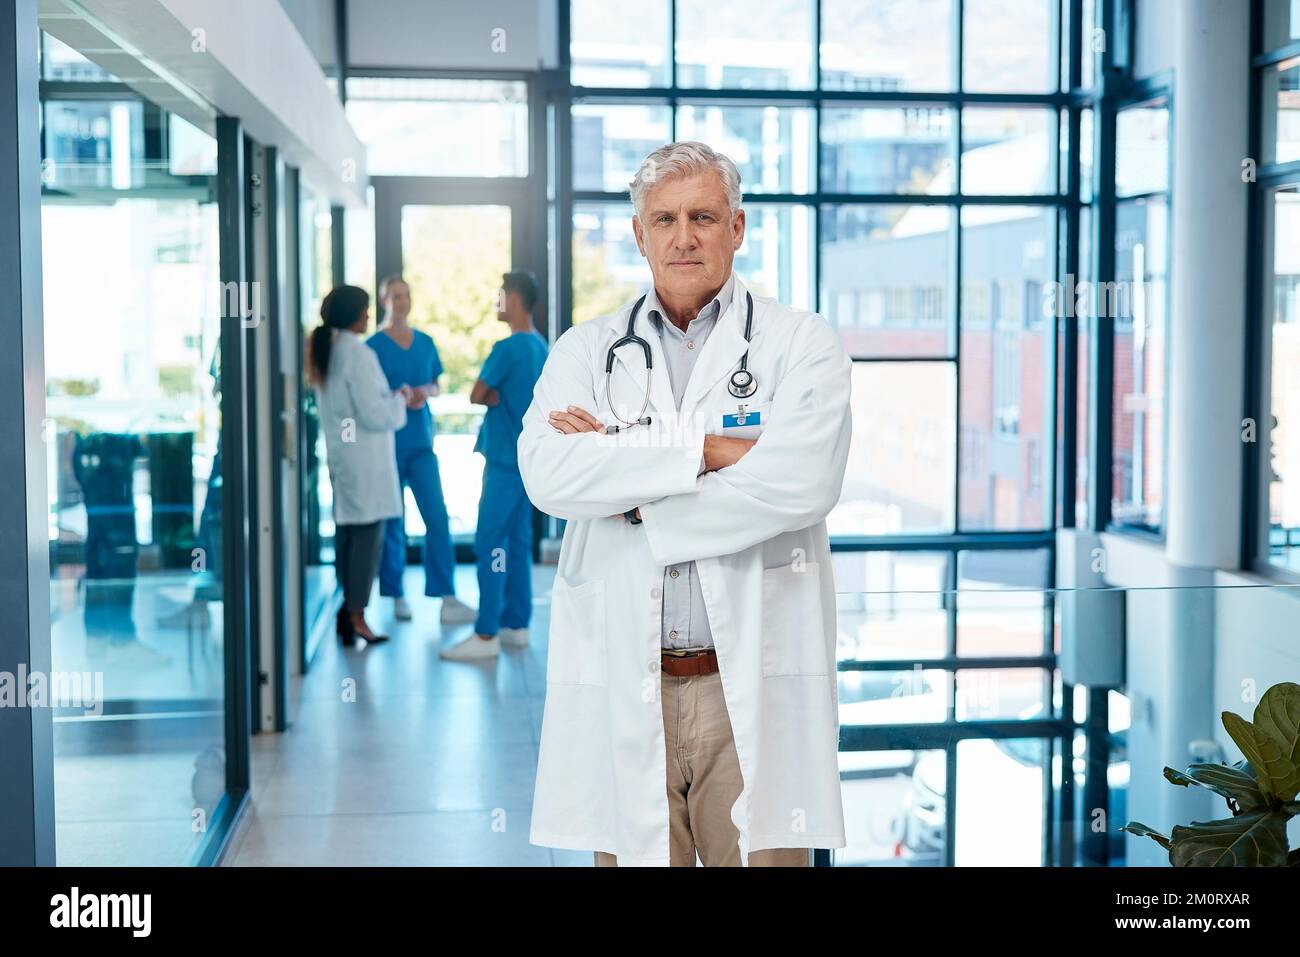 Ihre Gesundheit steht an erster Stelle. Ein reifer, männlicher Arzt, der mit gekreuzten Armen in einem modernen Krankenhaus steht. Stockfoto